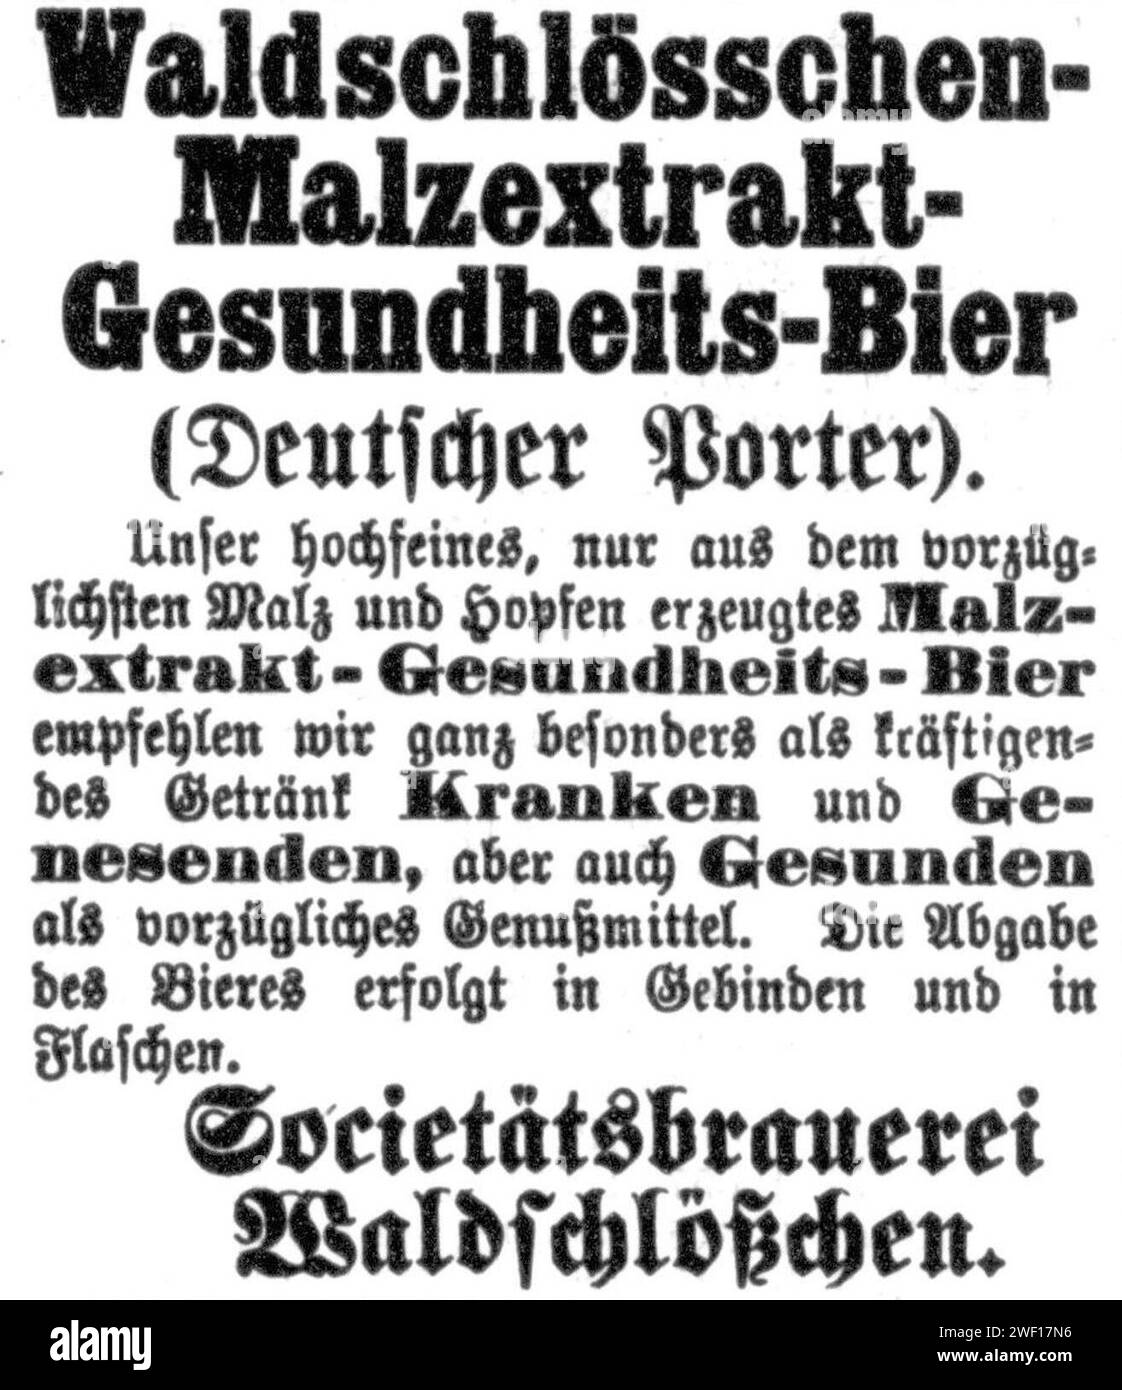 Anzeige Waldschlösschen Malzextrakt-Gesundheits-Bier. Banque D'Images